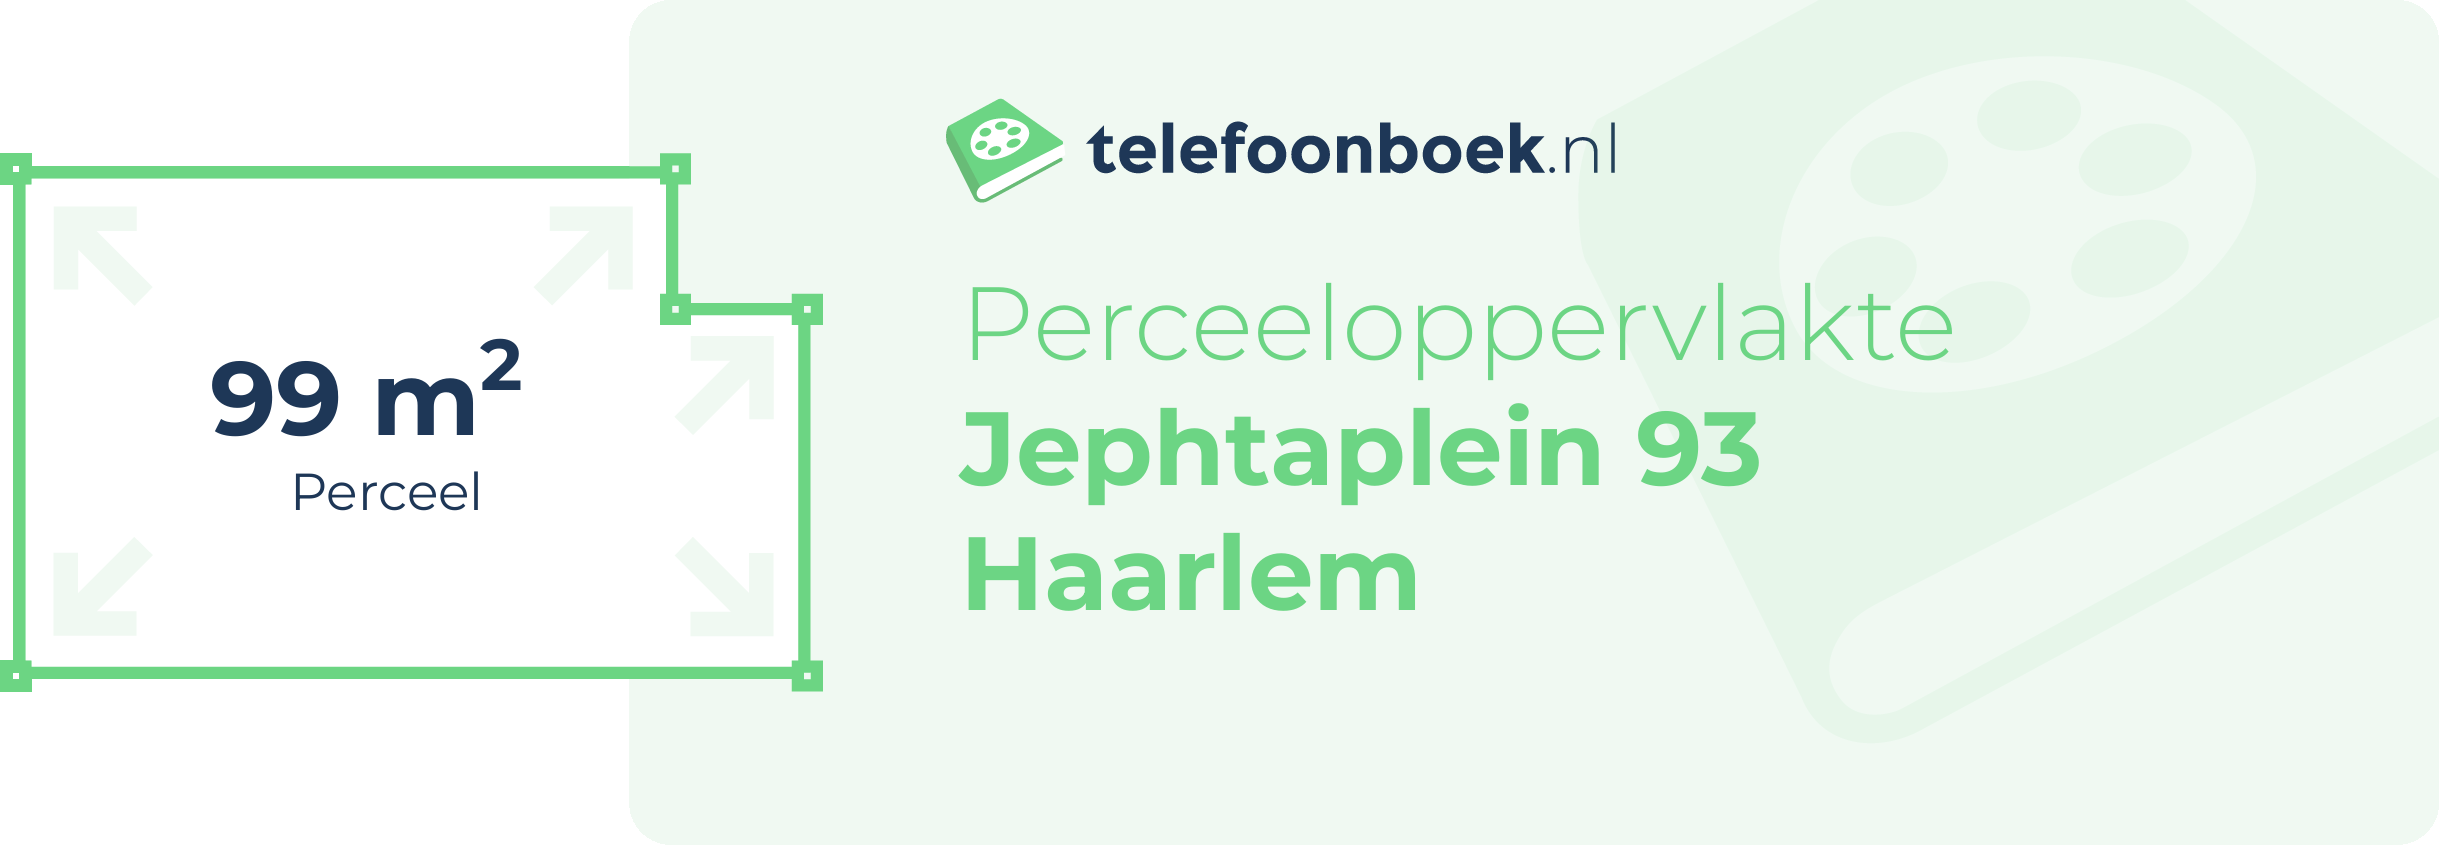 Perceeloppervlakte Jephtaplein 93 Haarlem